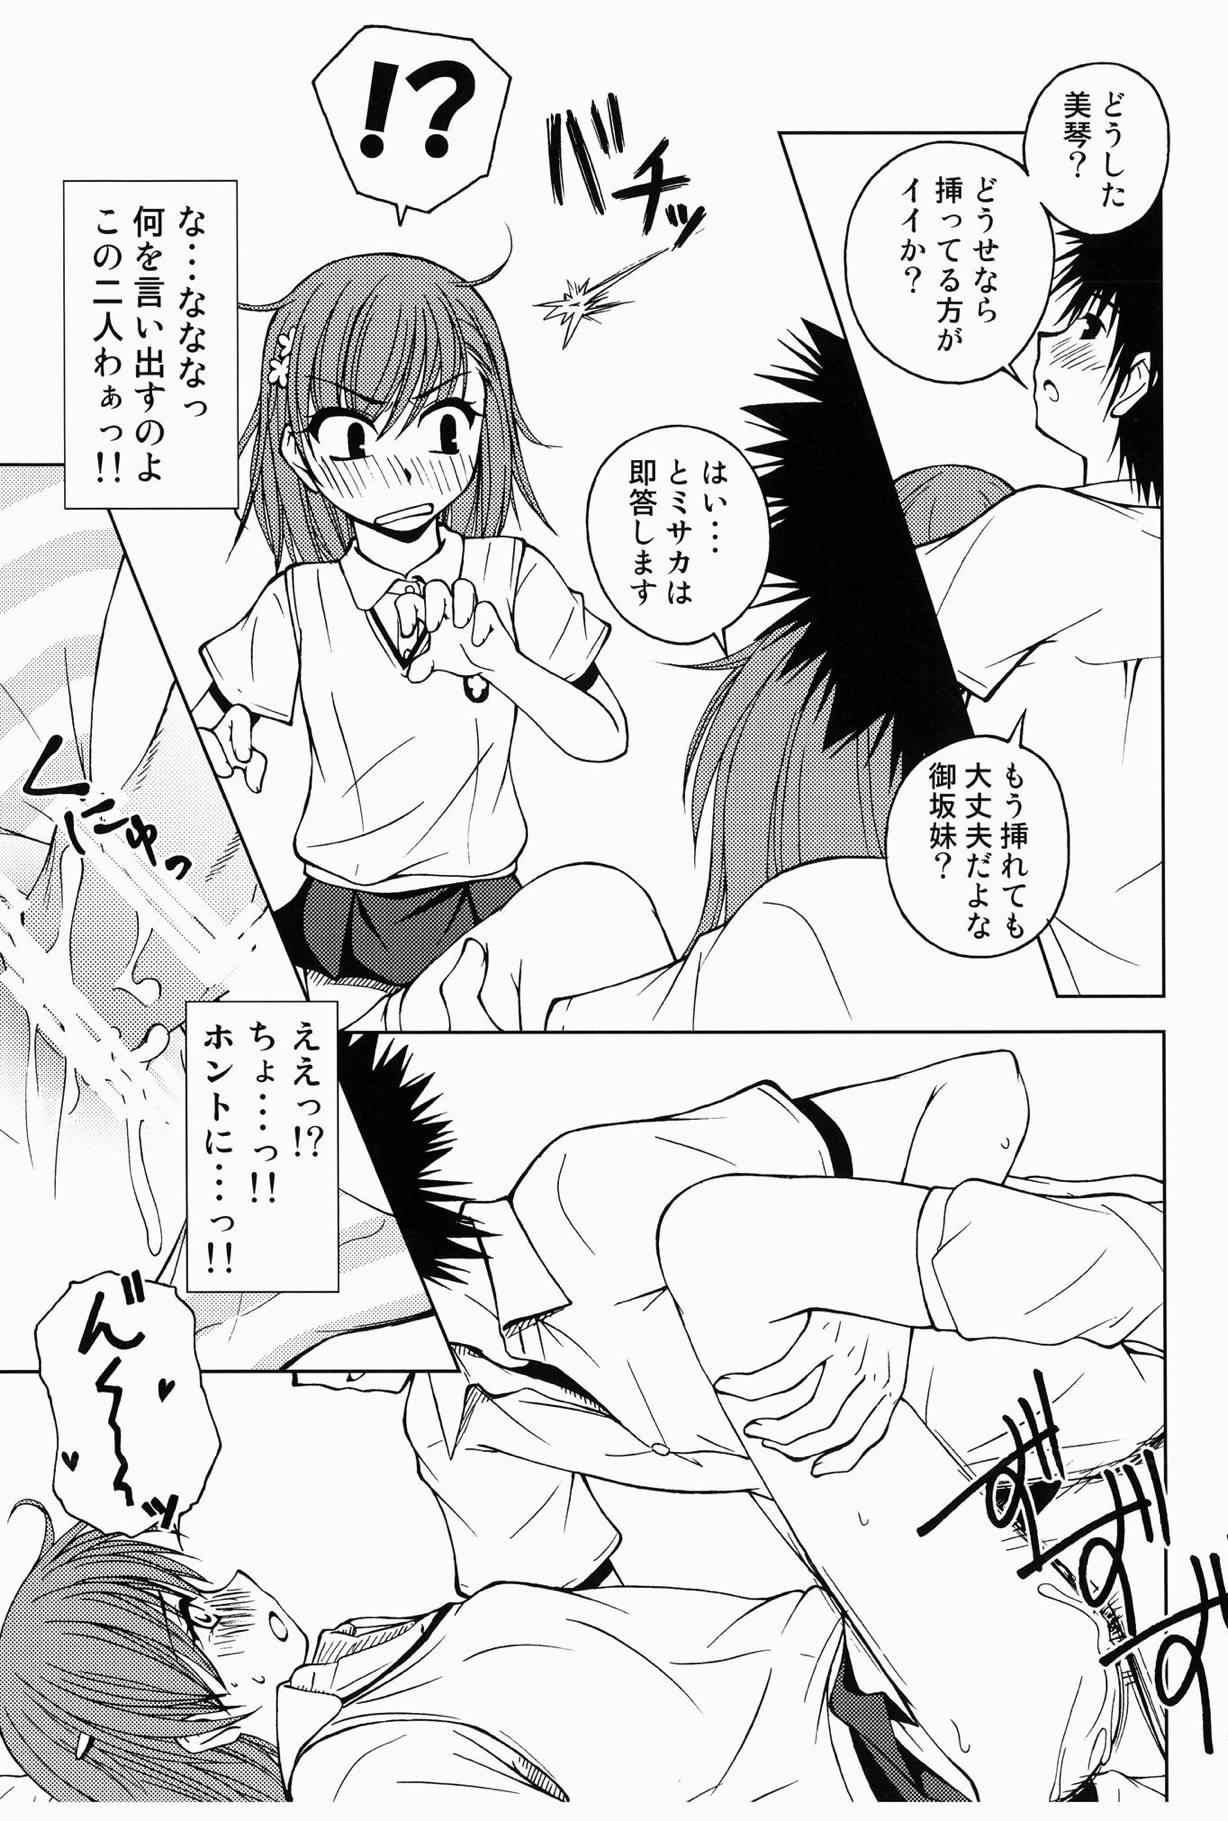 Deutsch Touma to Misaka to Railgun - Toaru kagaku no railgun Cougar - Page 12